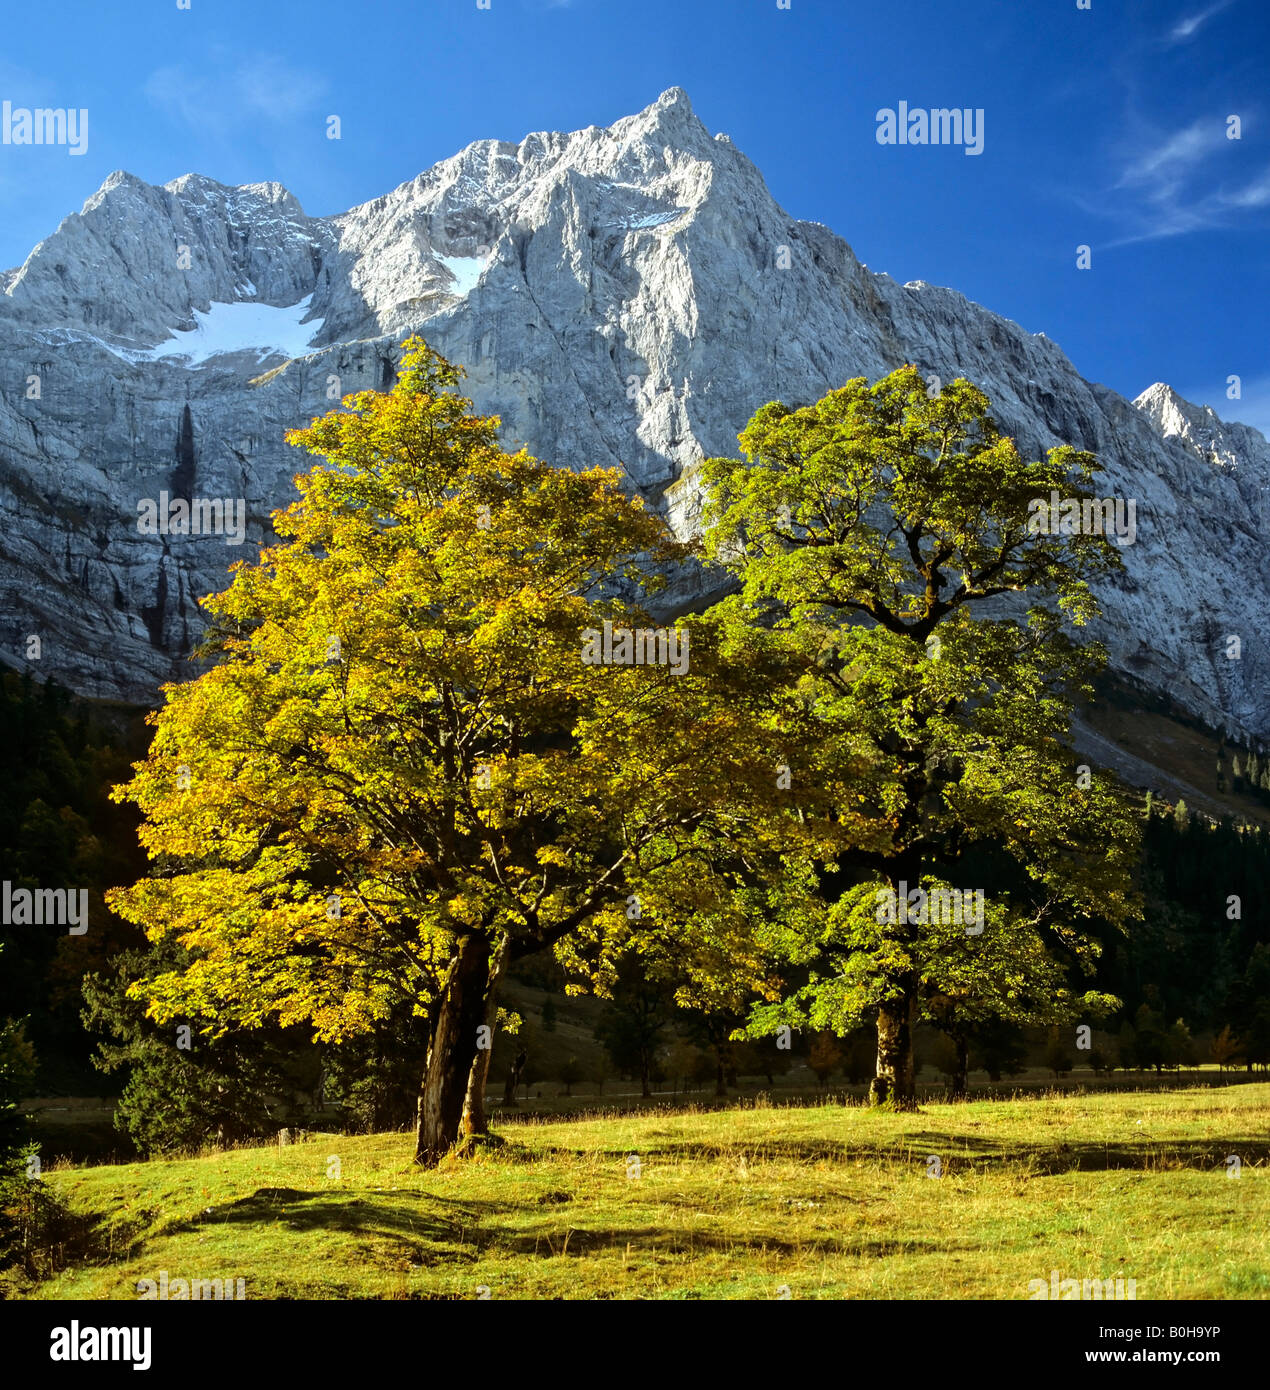 Grosser Ahornboden, autumn, Mt. Spritzkarspitze, Eiskarln, Karwendel Range, Tirol, Austria Stock Photo